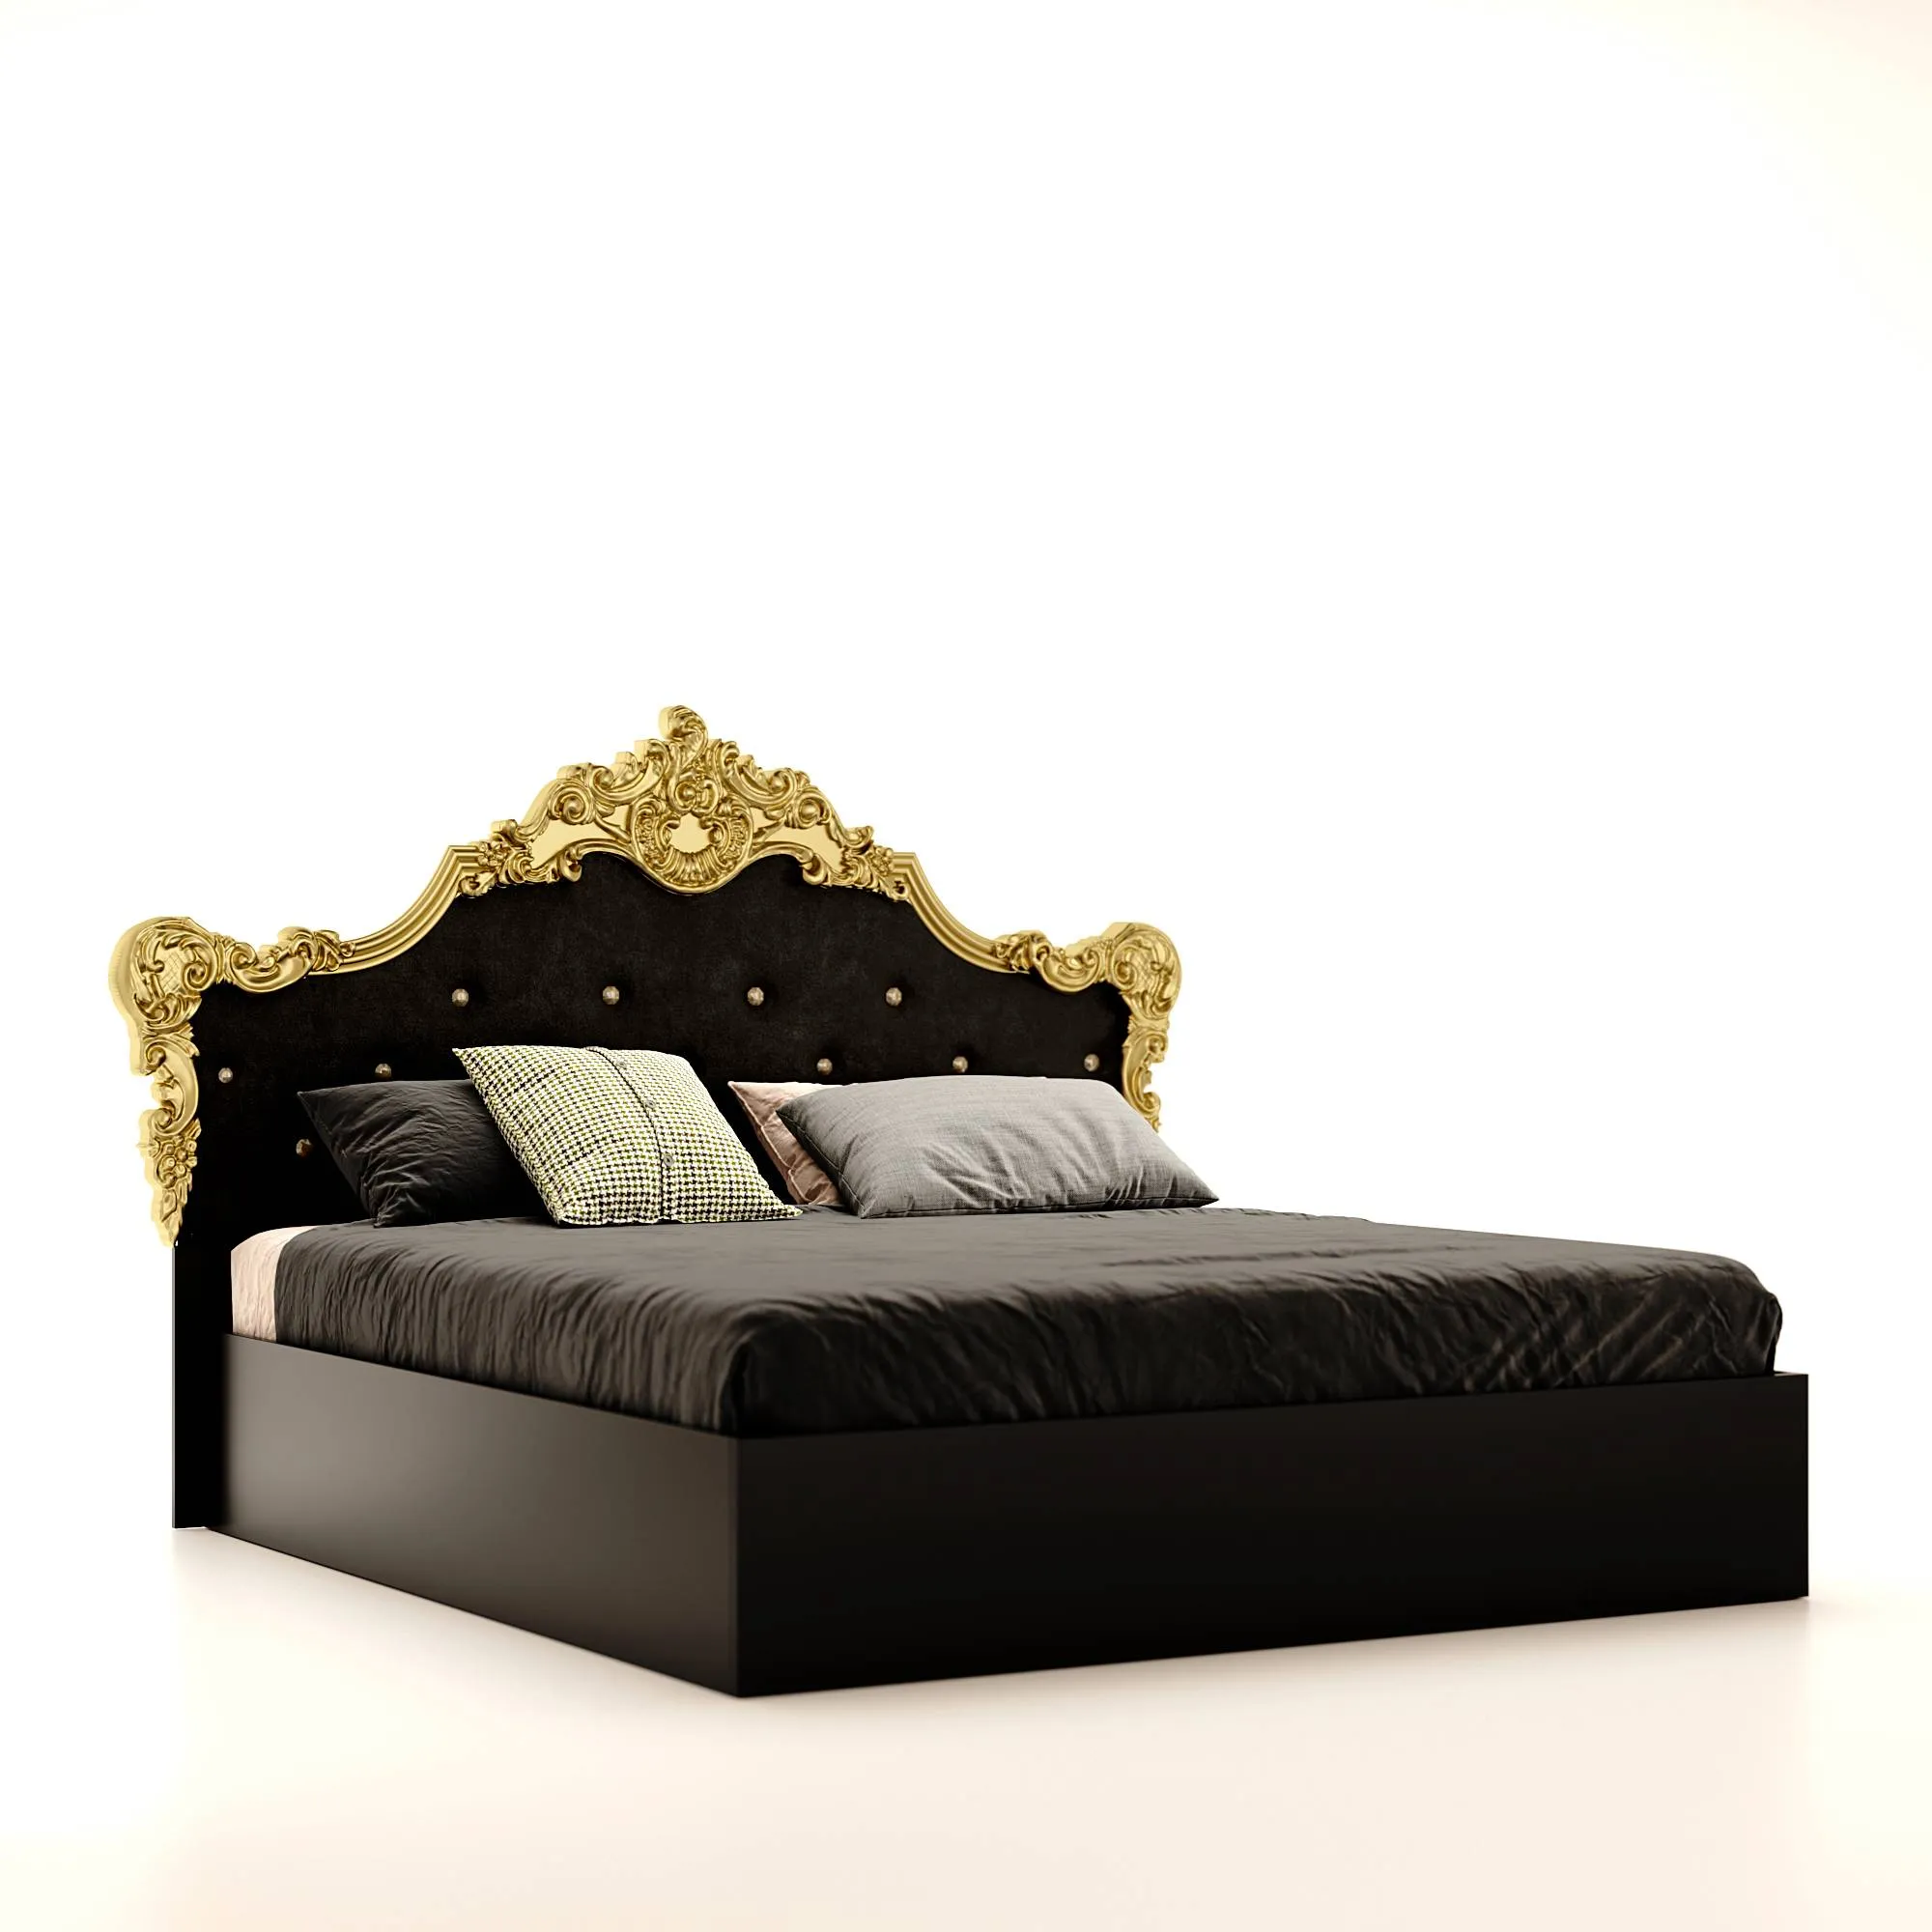 Jennifer łóżko 1,8 czarny połysk ze stelażem - Czarny połysk' title='Jennifer łóżko 1,8 czarny połysk ze stelażem